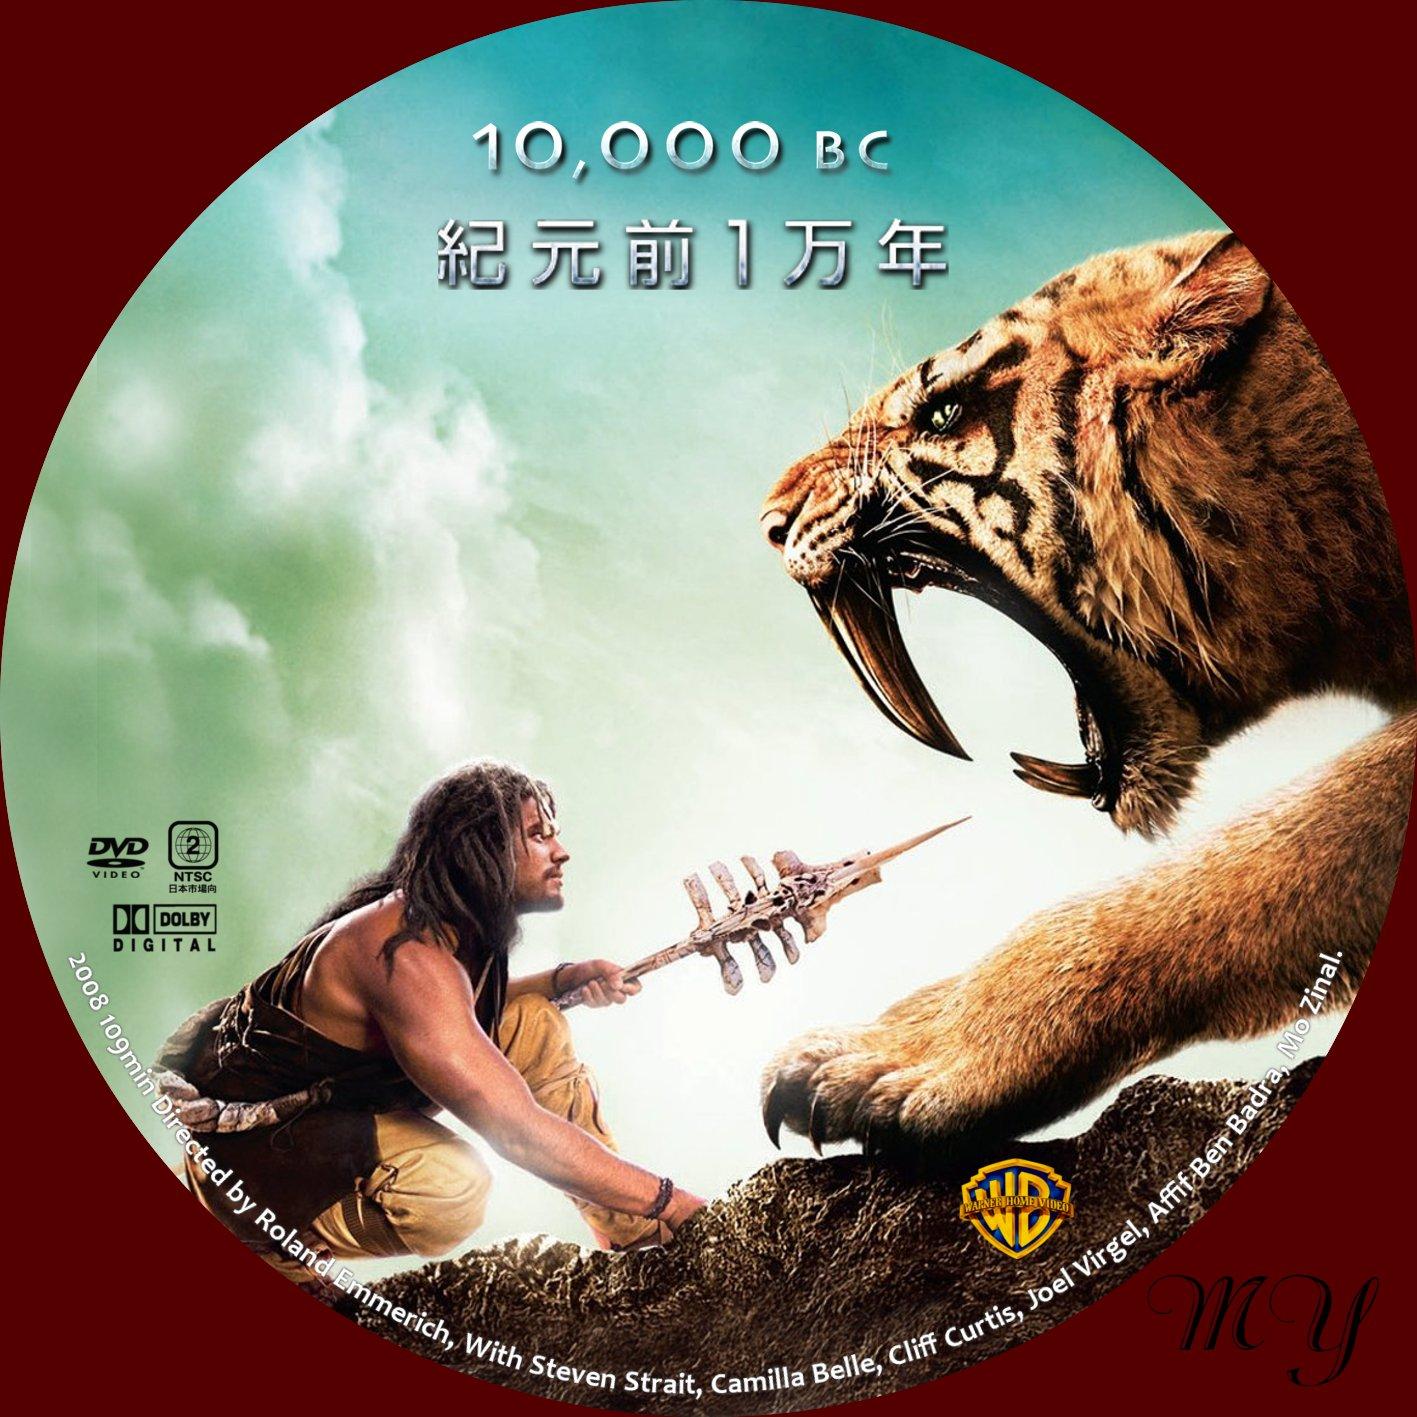 ほにょほにょな一日無料dvd ラベル製作室 紀元前1万年